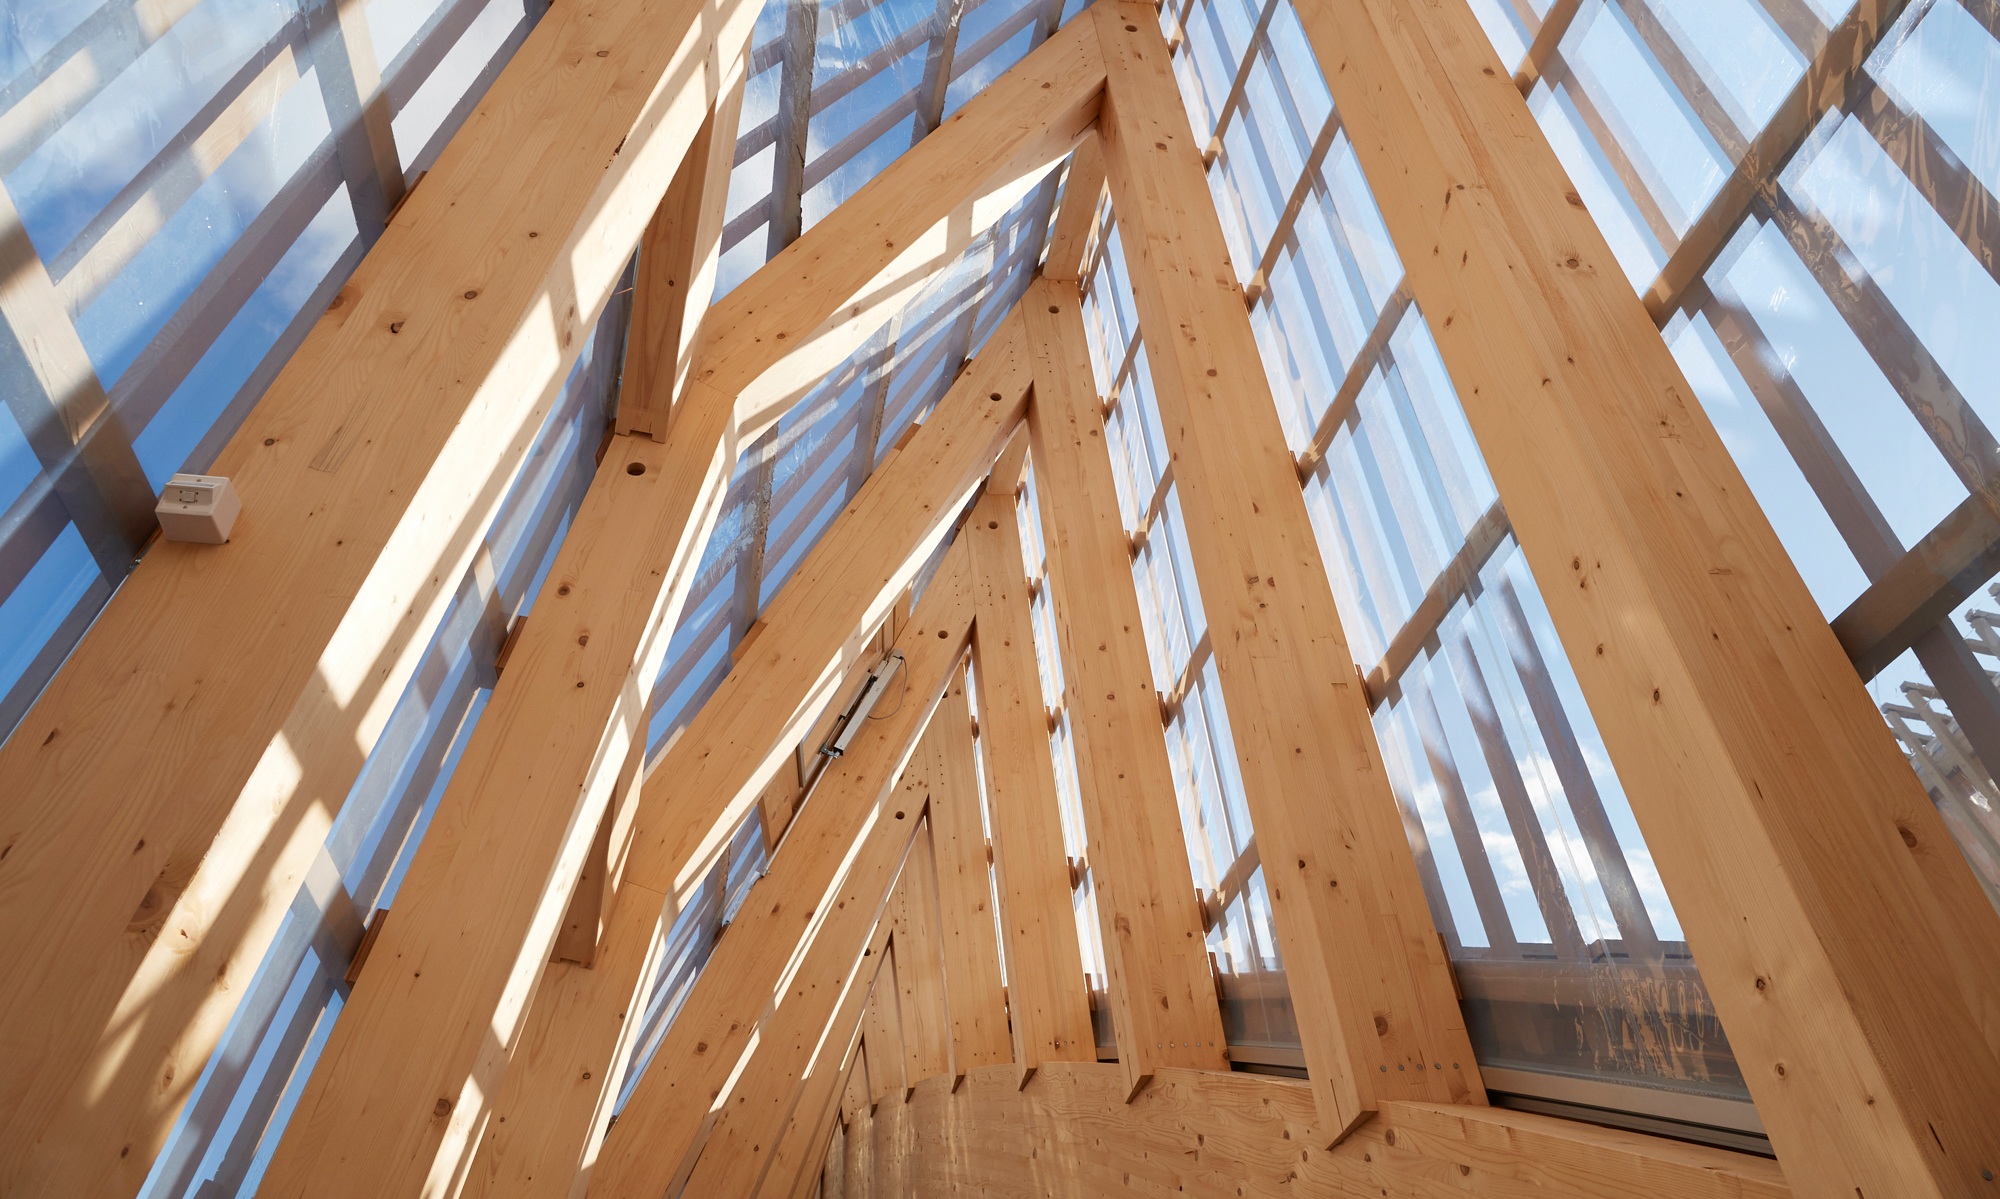 Detailaufnahme der Dachstruktur aus Holzbalken, welche mit Glasscheiben überzogen sind und dadurch viel Licht in das Gebäude bringen